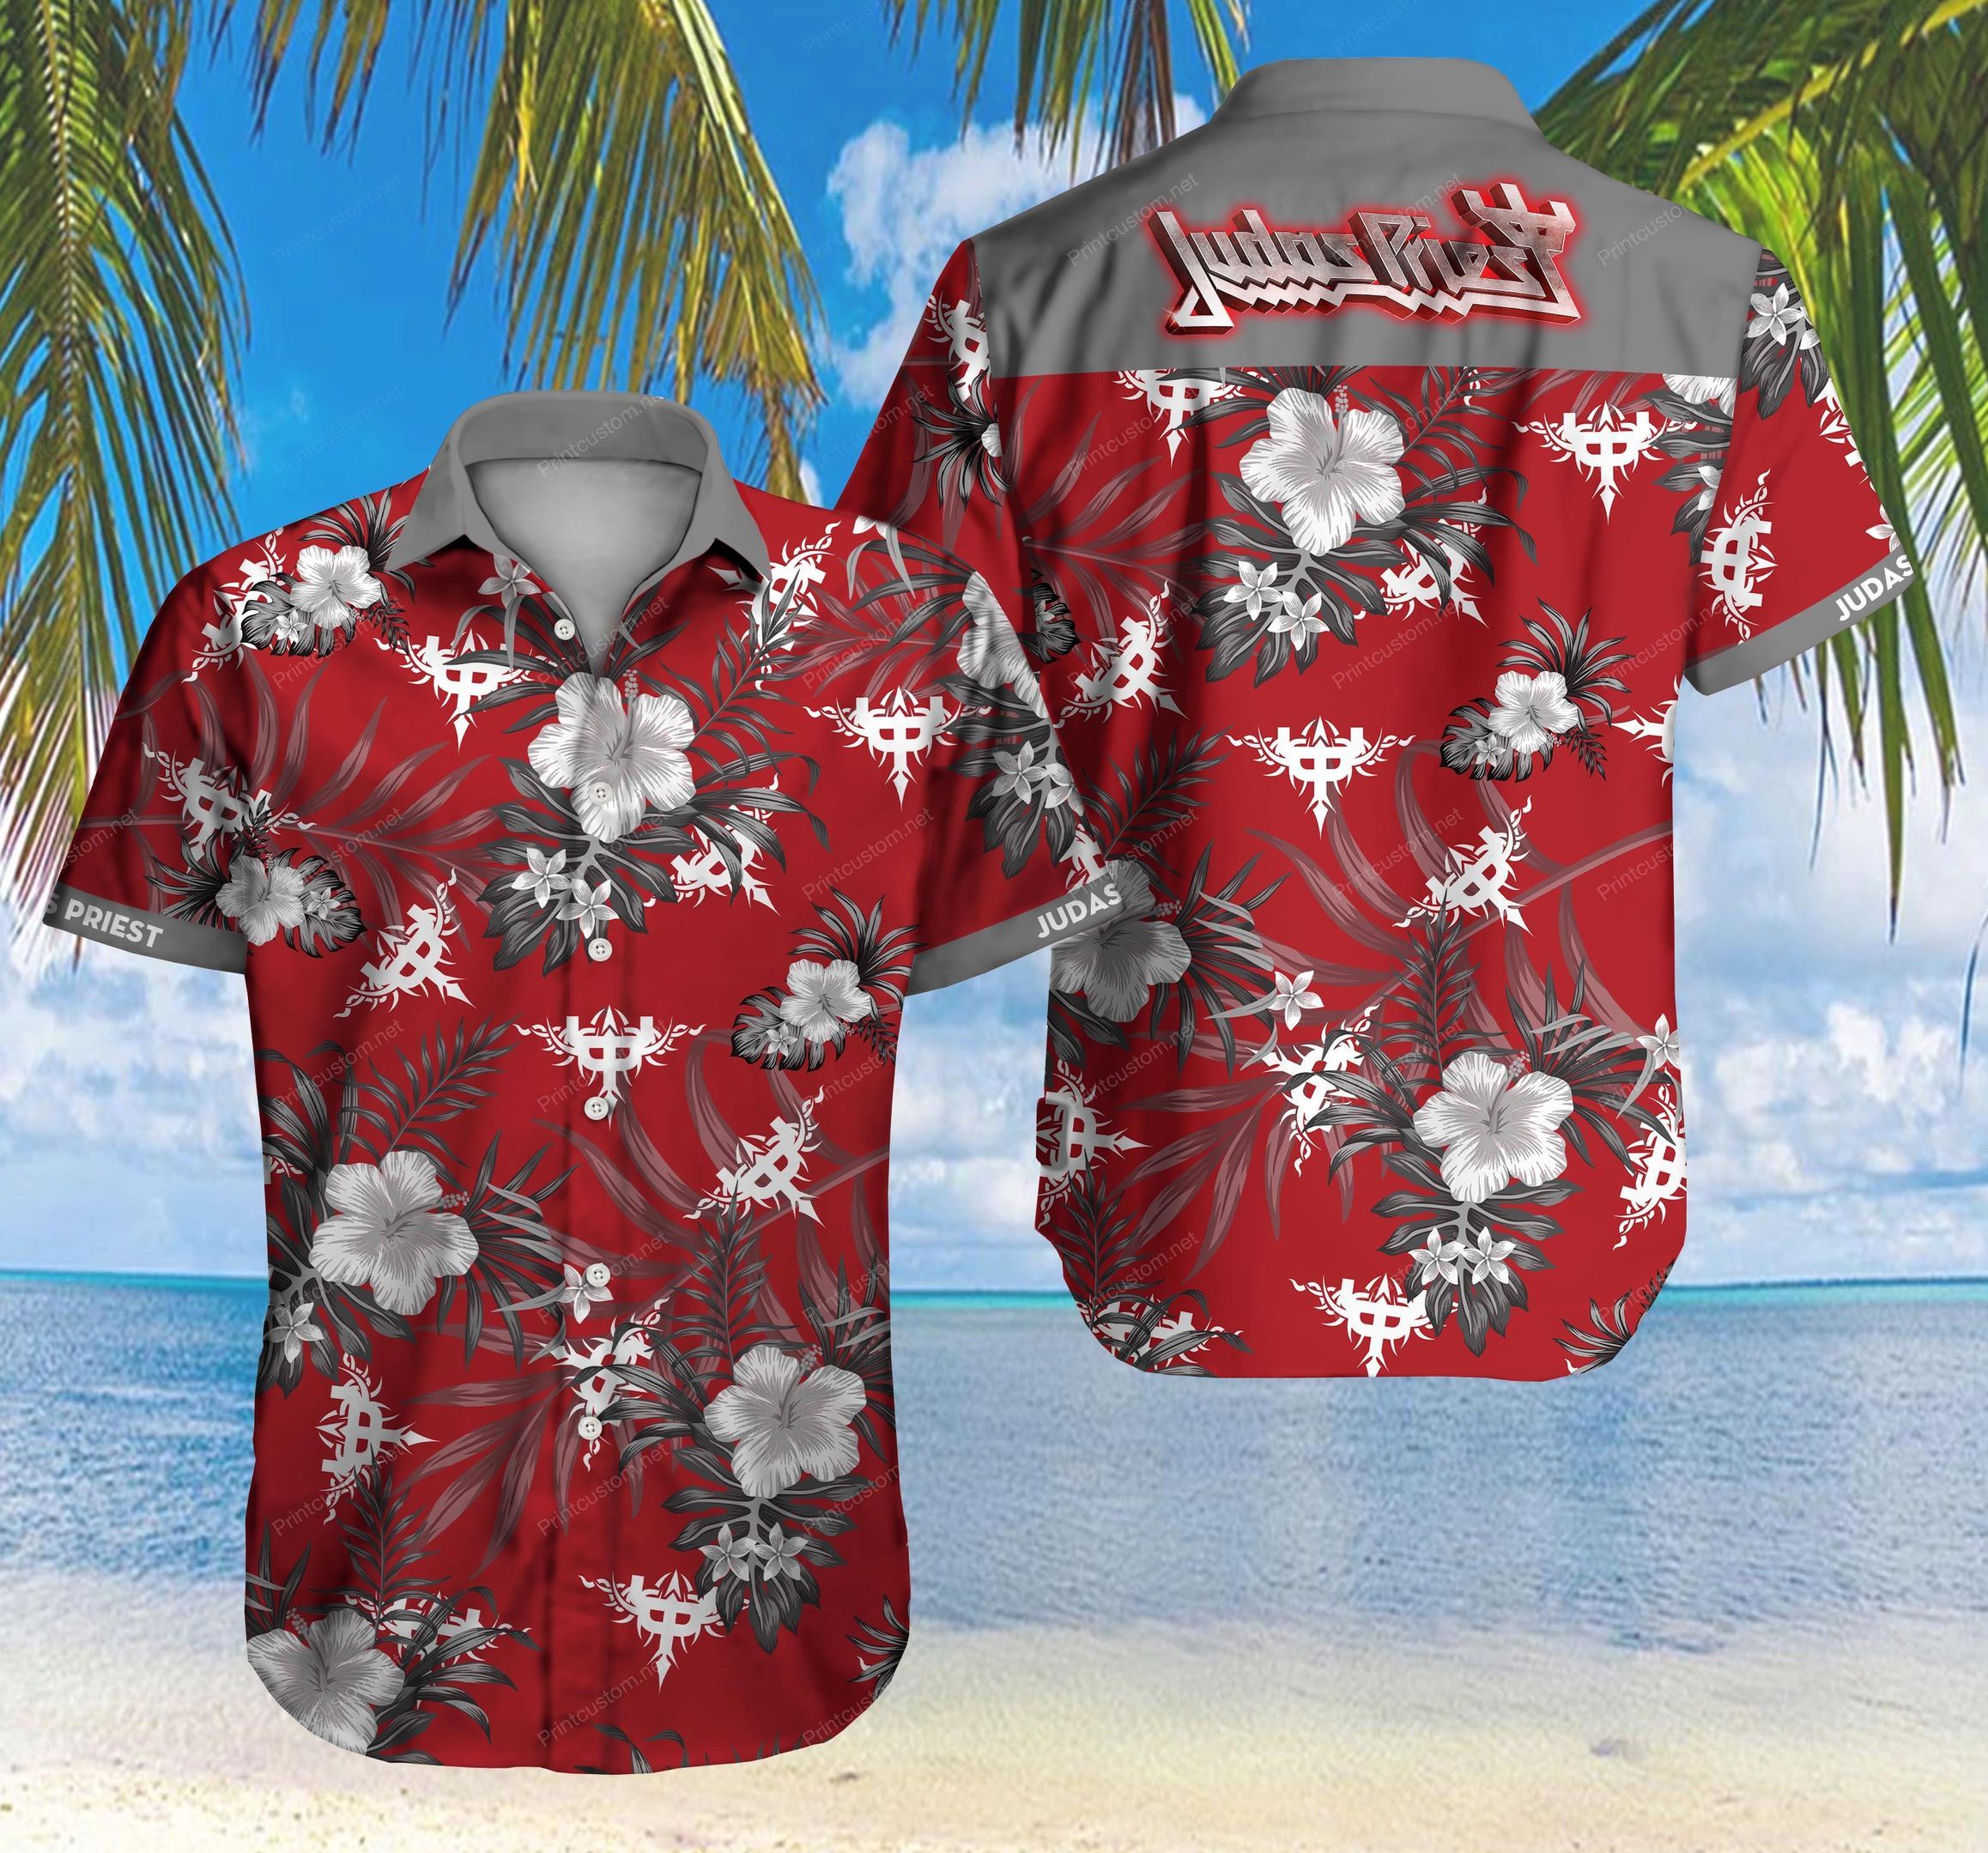 Tlmus-judas Priest Hawaii Shirt Summer Button Up Shirt For Men Beach Wear Short Sleeve Hawaii Shirt